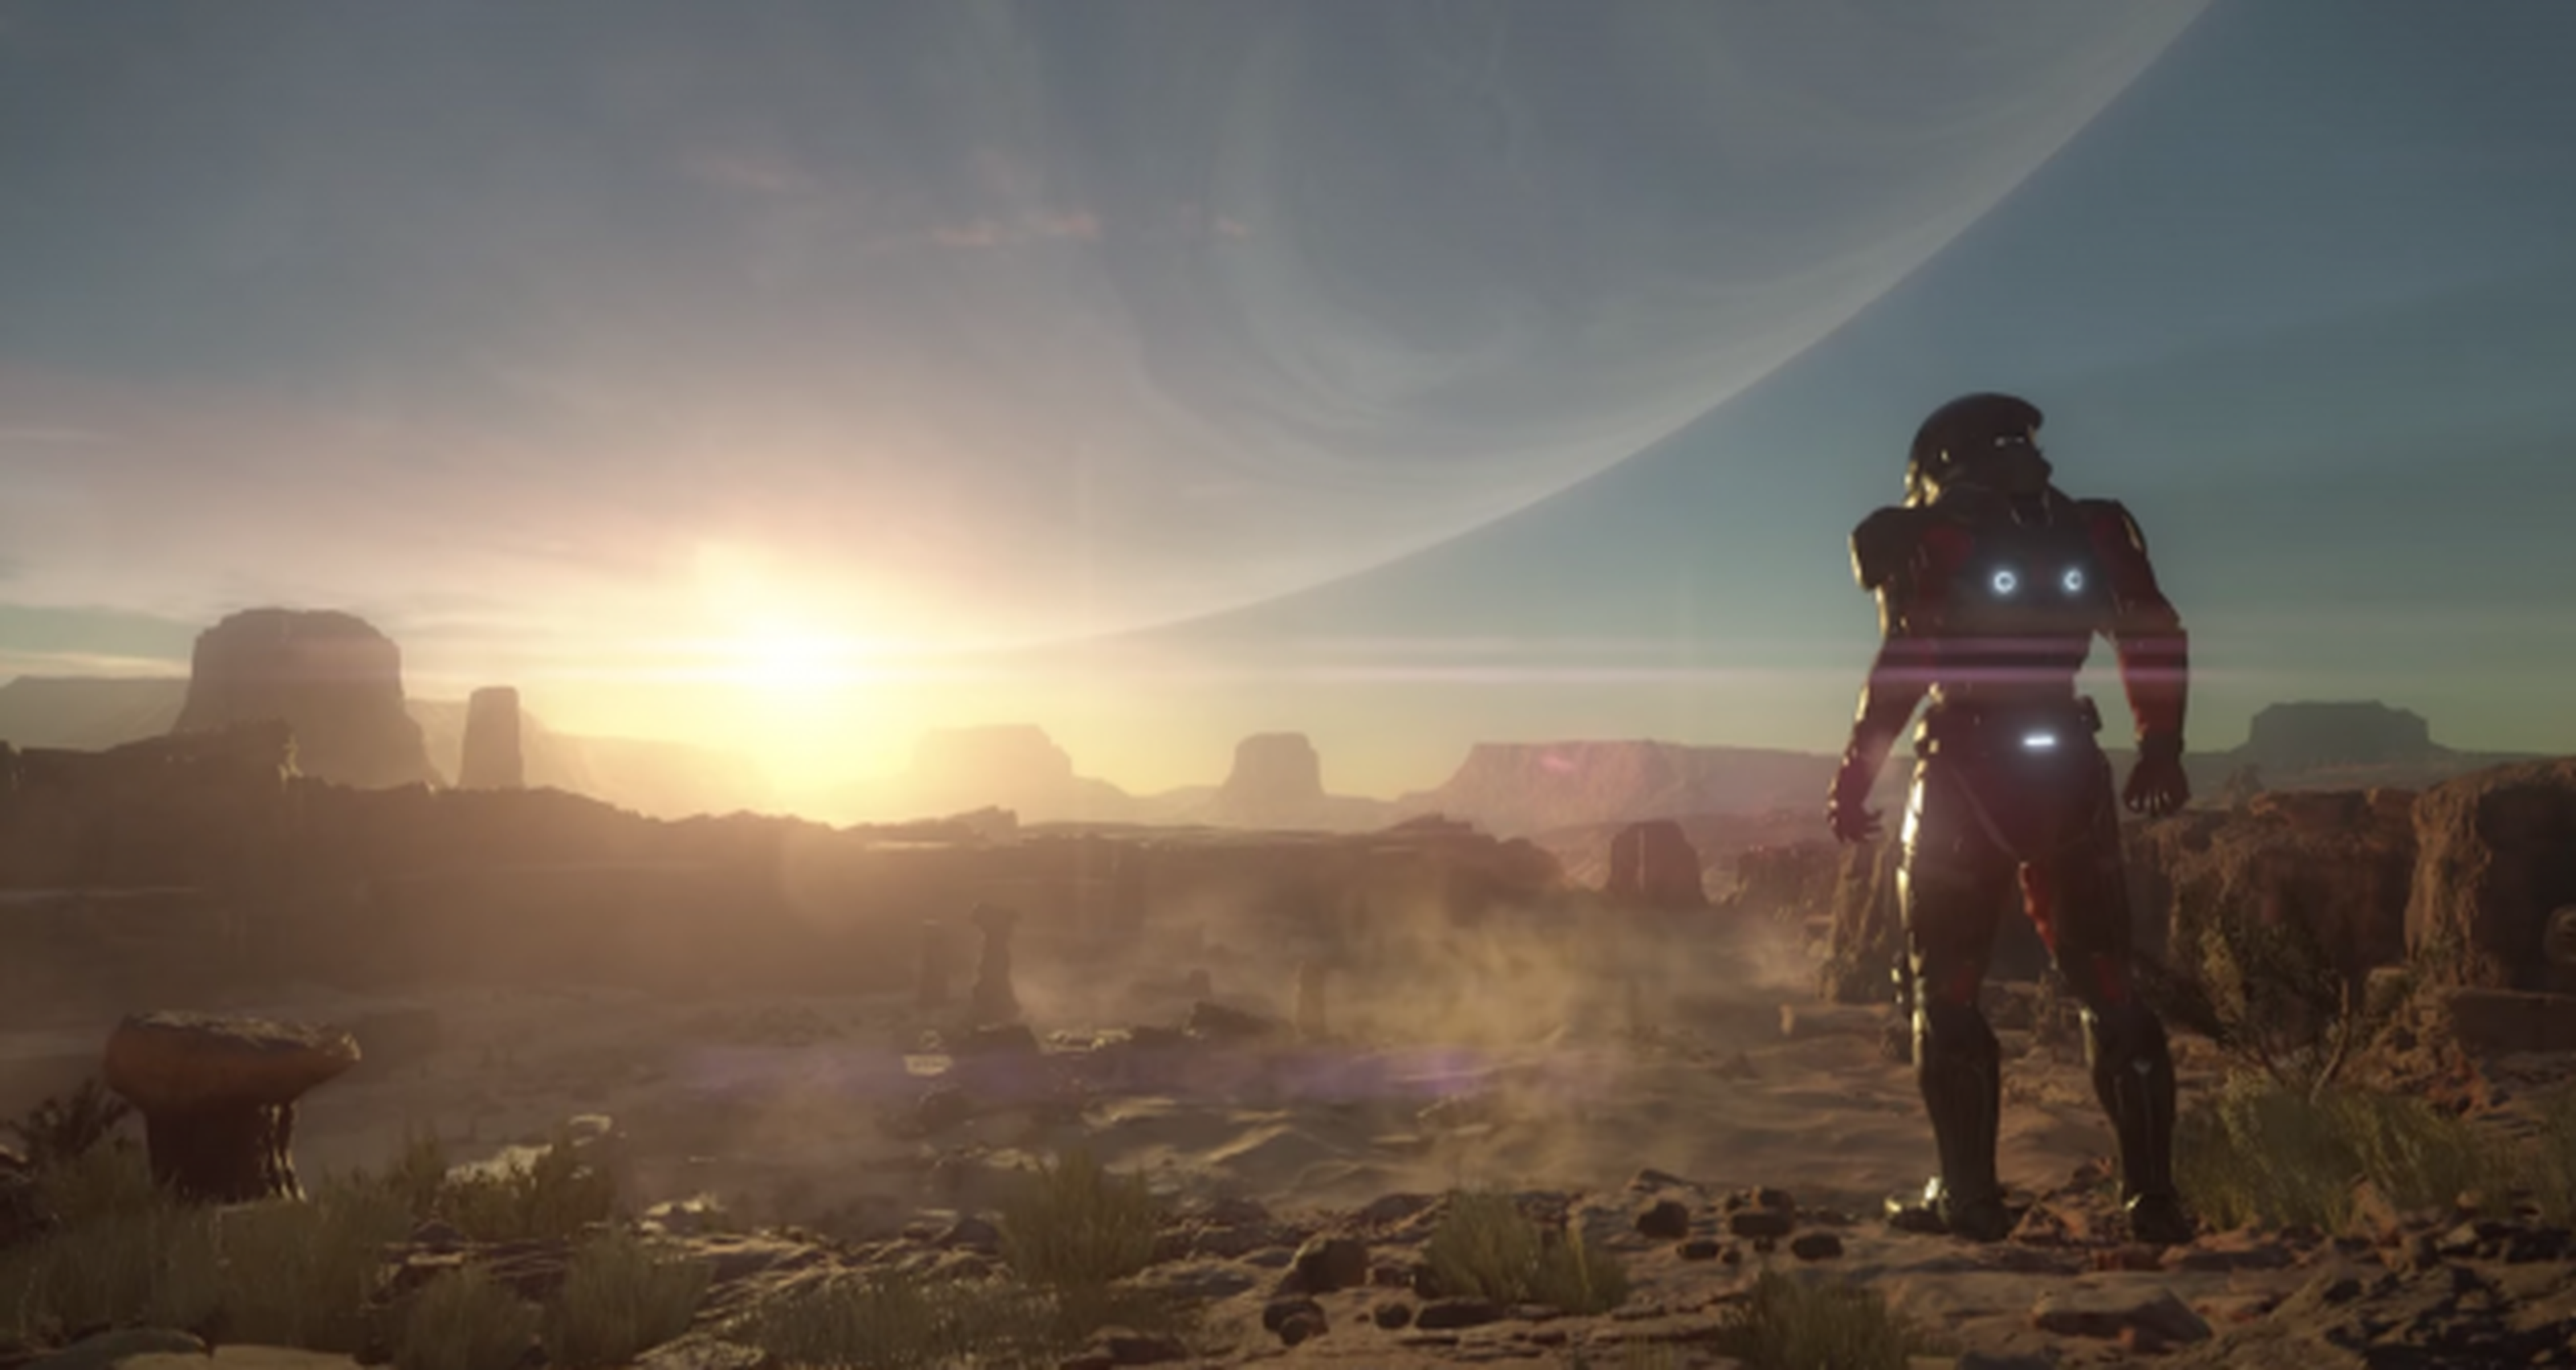 Mass Effect Andromeda, filtrados detalles de un gameplay